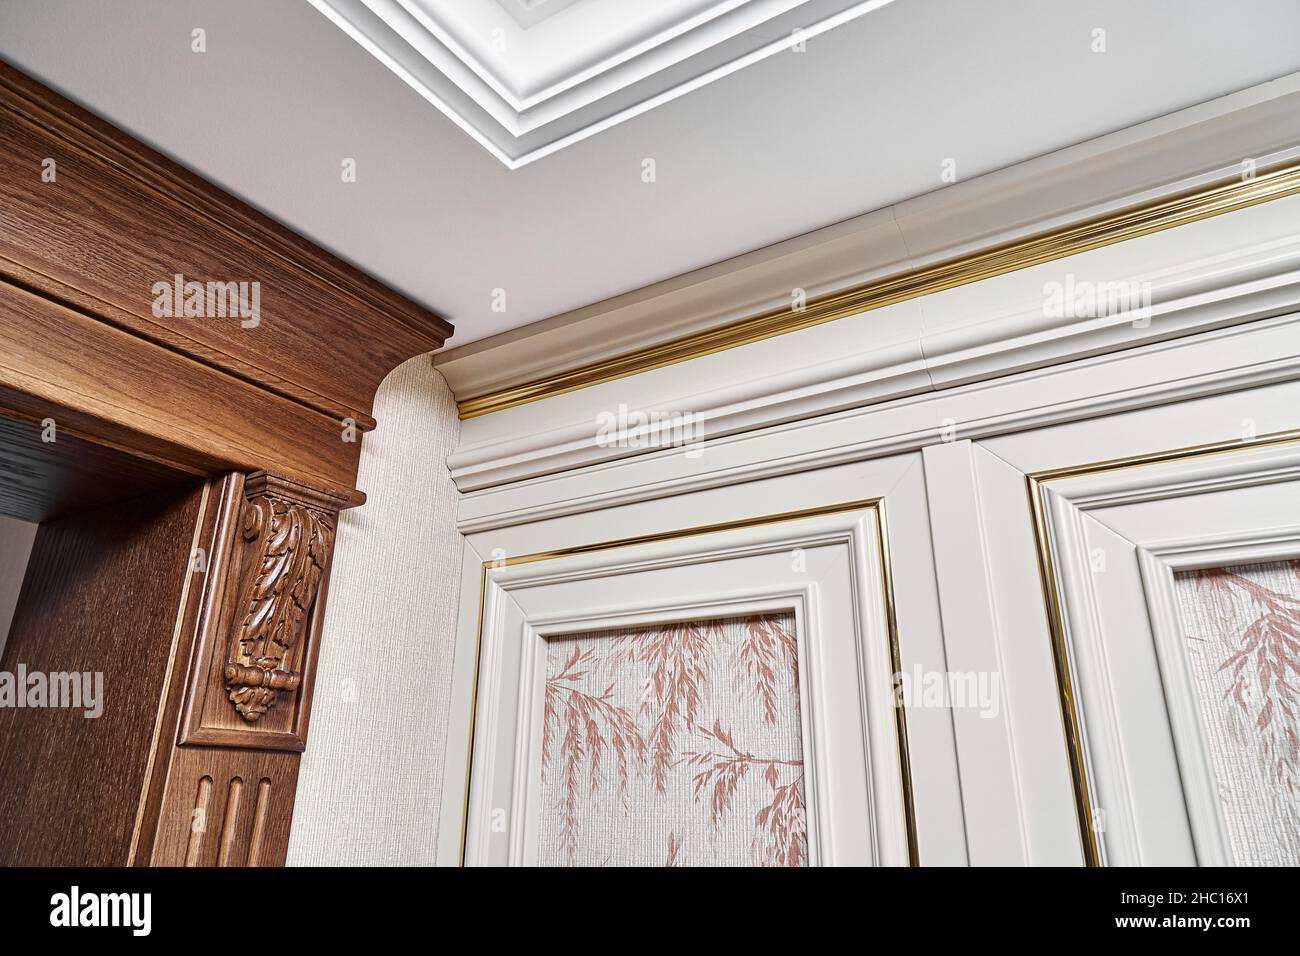 Porte en bois décorée avec supports de mobilier sculptés et panneau cannelé et panneau mural vintage avec moulures dorées dans un style classique Banque D'Images